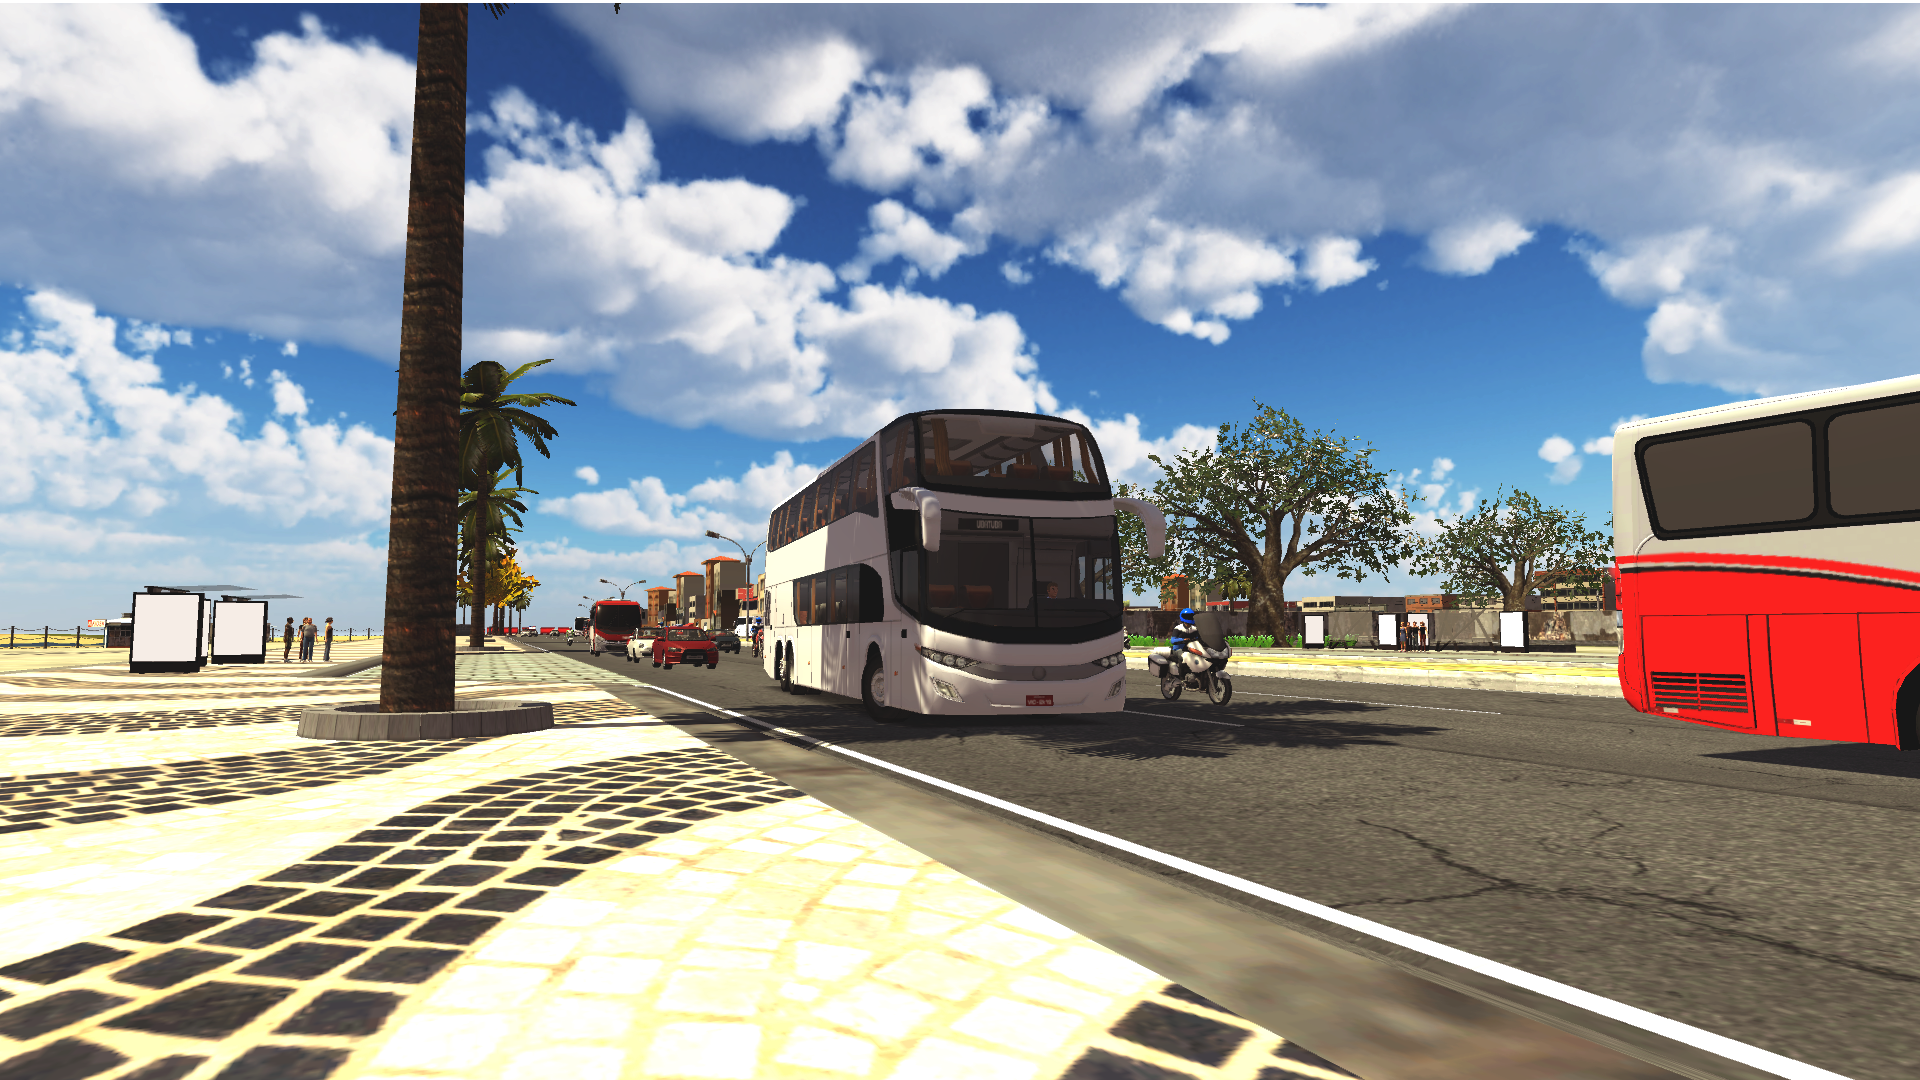 Atualização Proton Bus Simulator Road Android e PC